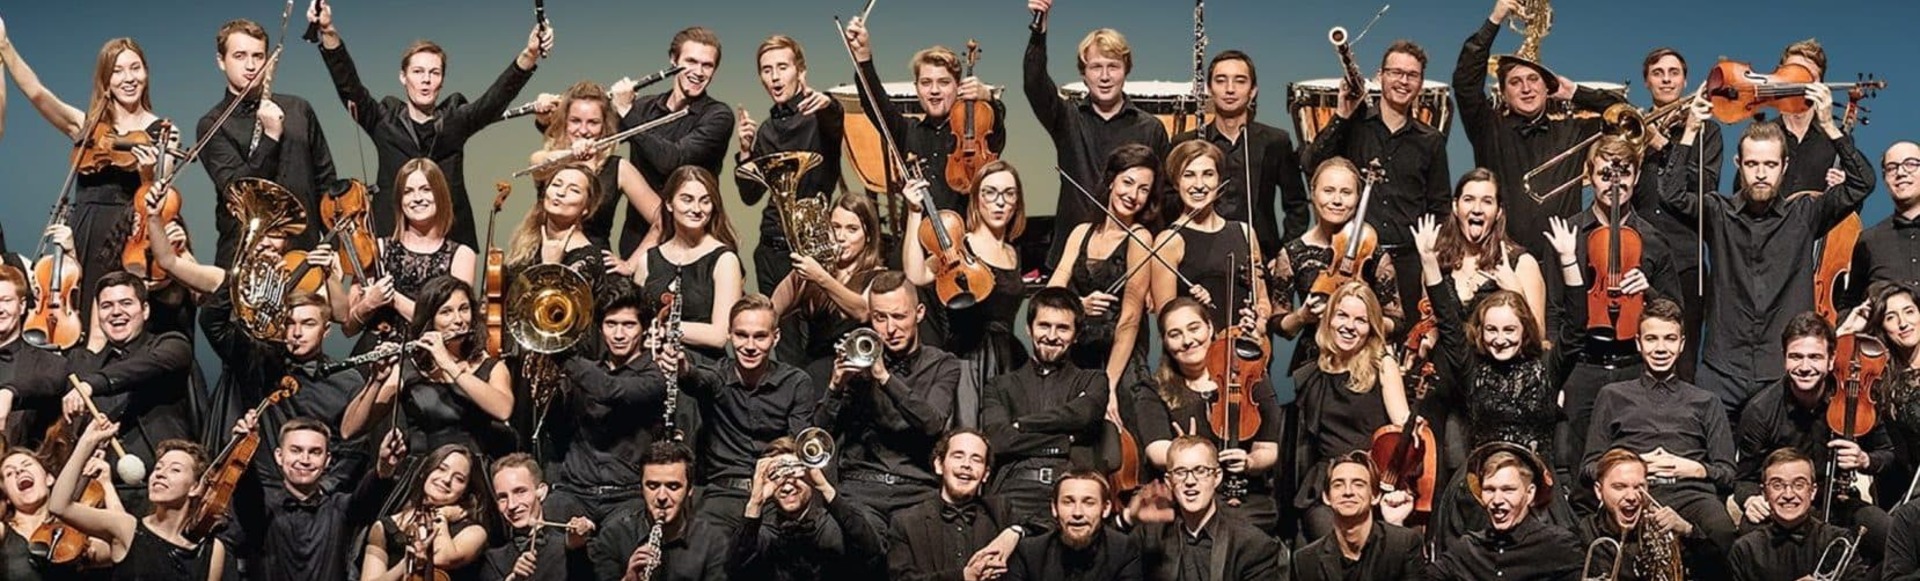 Российский национальный молодёжный симфонический оркестр, Александр Лазарев, Александр Канторов